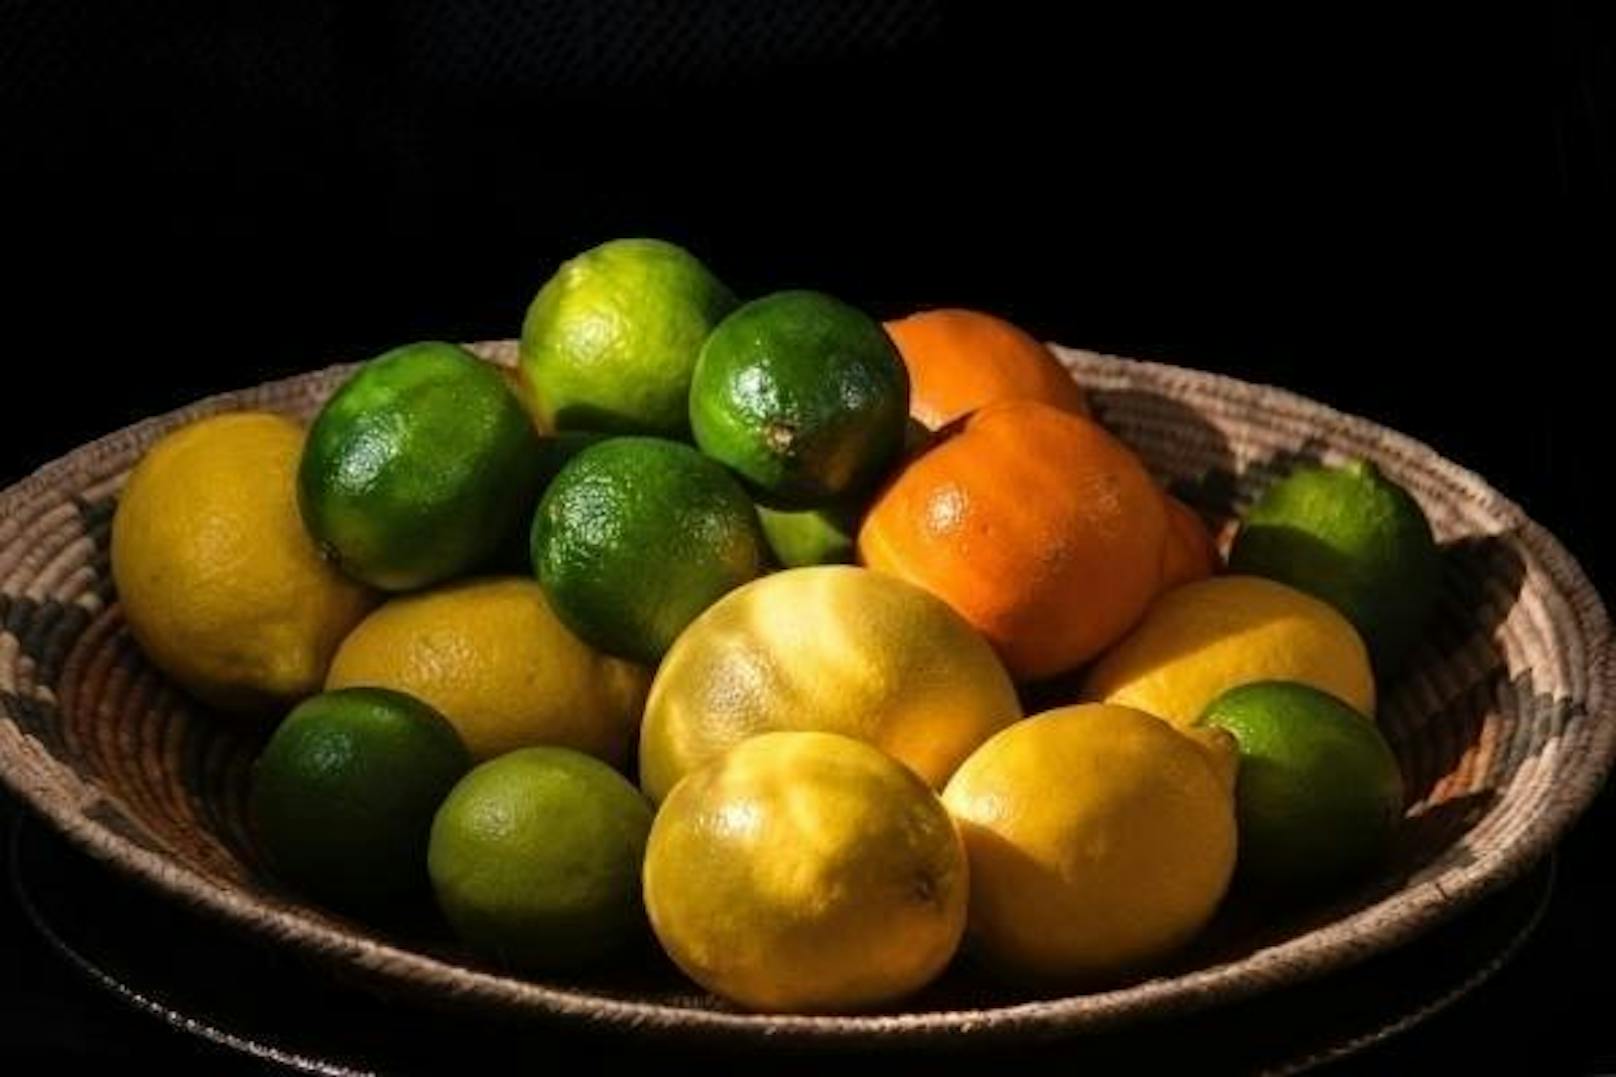 <b>Zitronen- und Orangenschalen kochen</b>
Falls Essig-Dampf nicht so dein Ding ist und du nicht nur einen neutralen Geruch, sondern einen angenehmen Duft möchtest, dann kannst du etwas anderes aufkochen: Zitronen- und Orangenschalen zum Beispiel. 